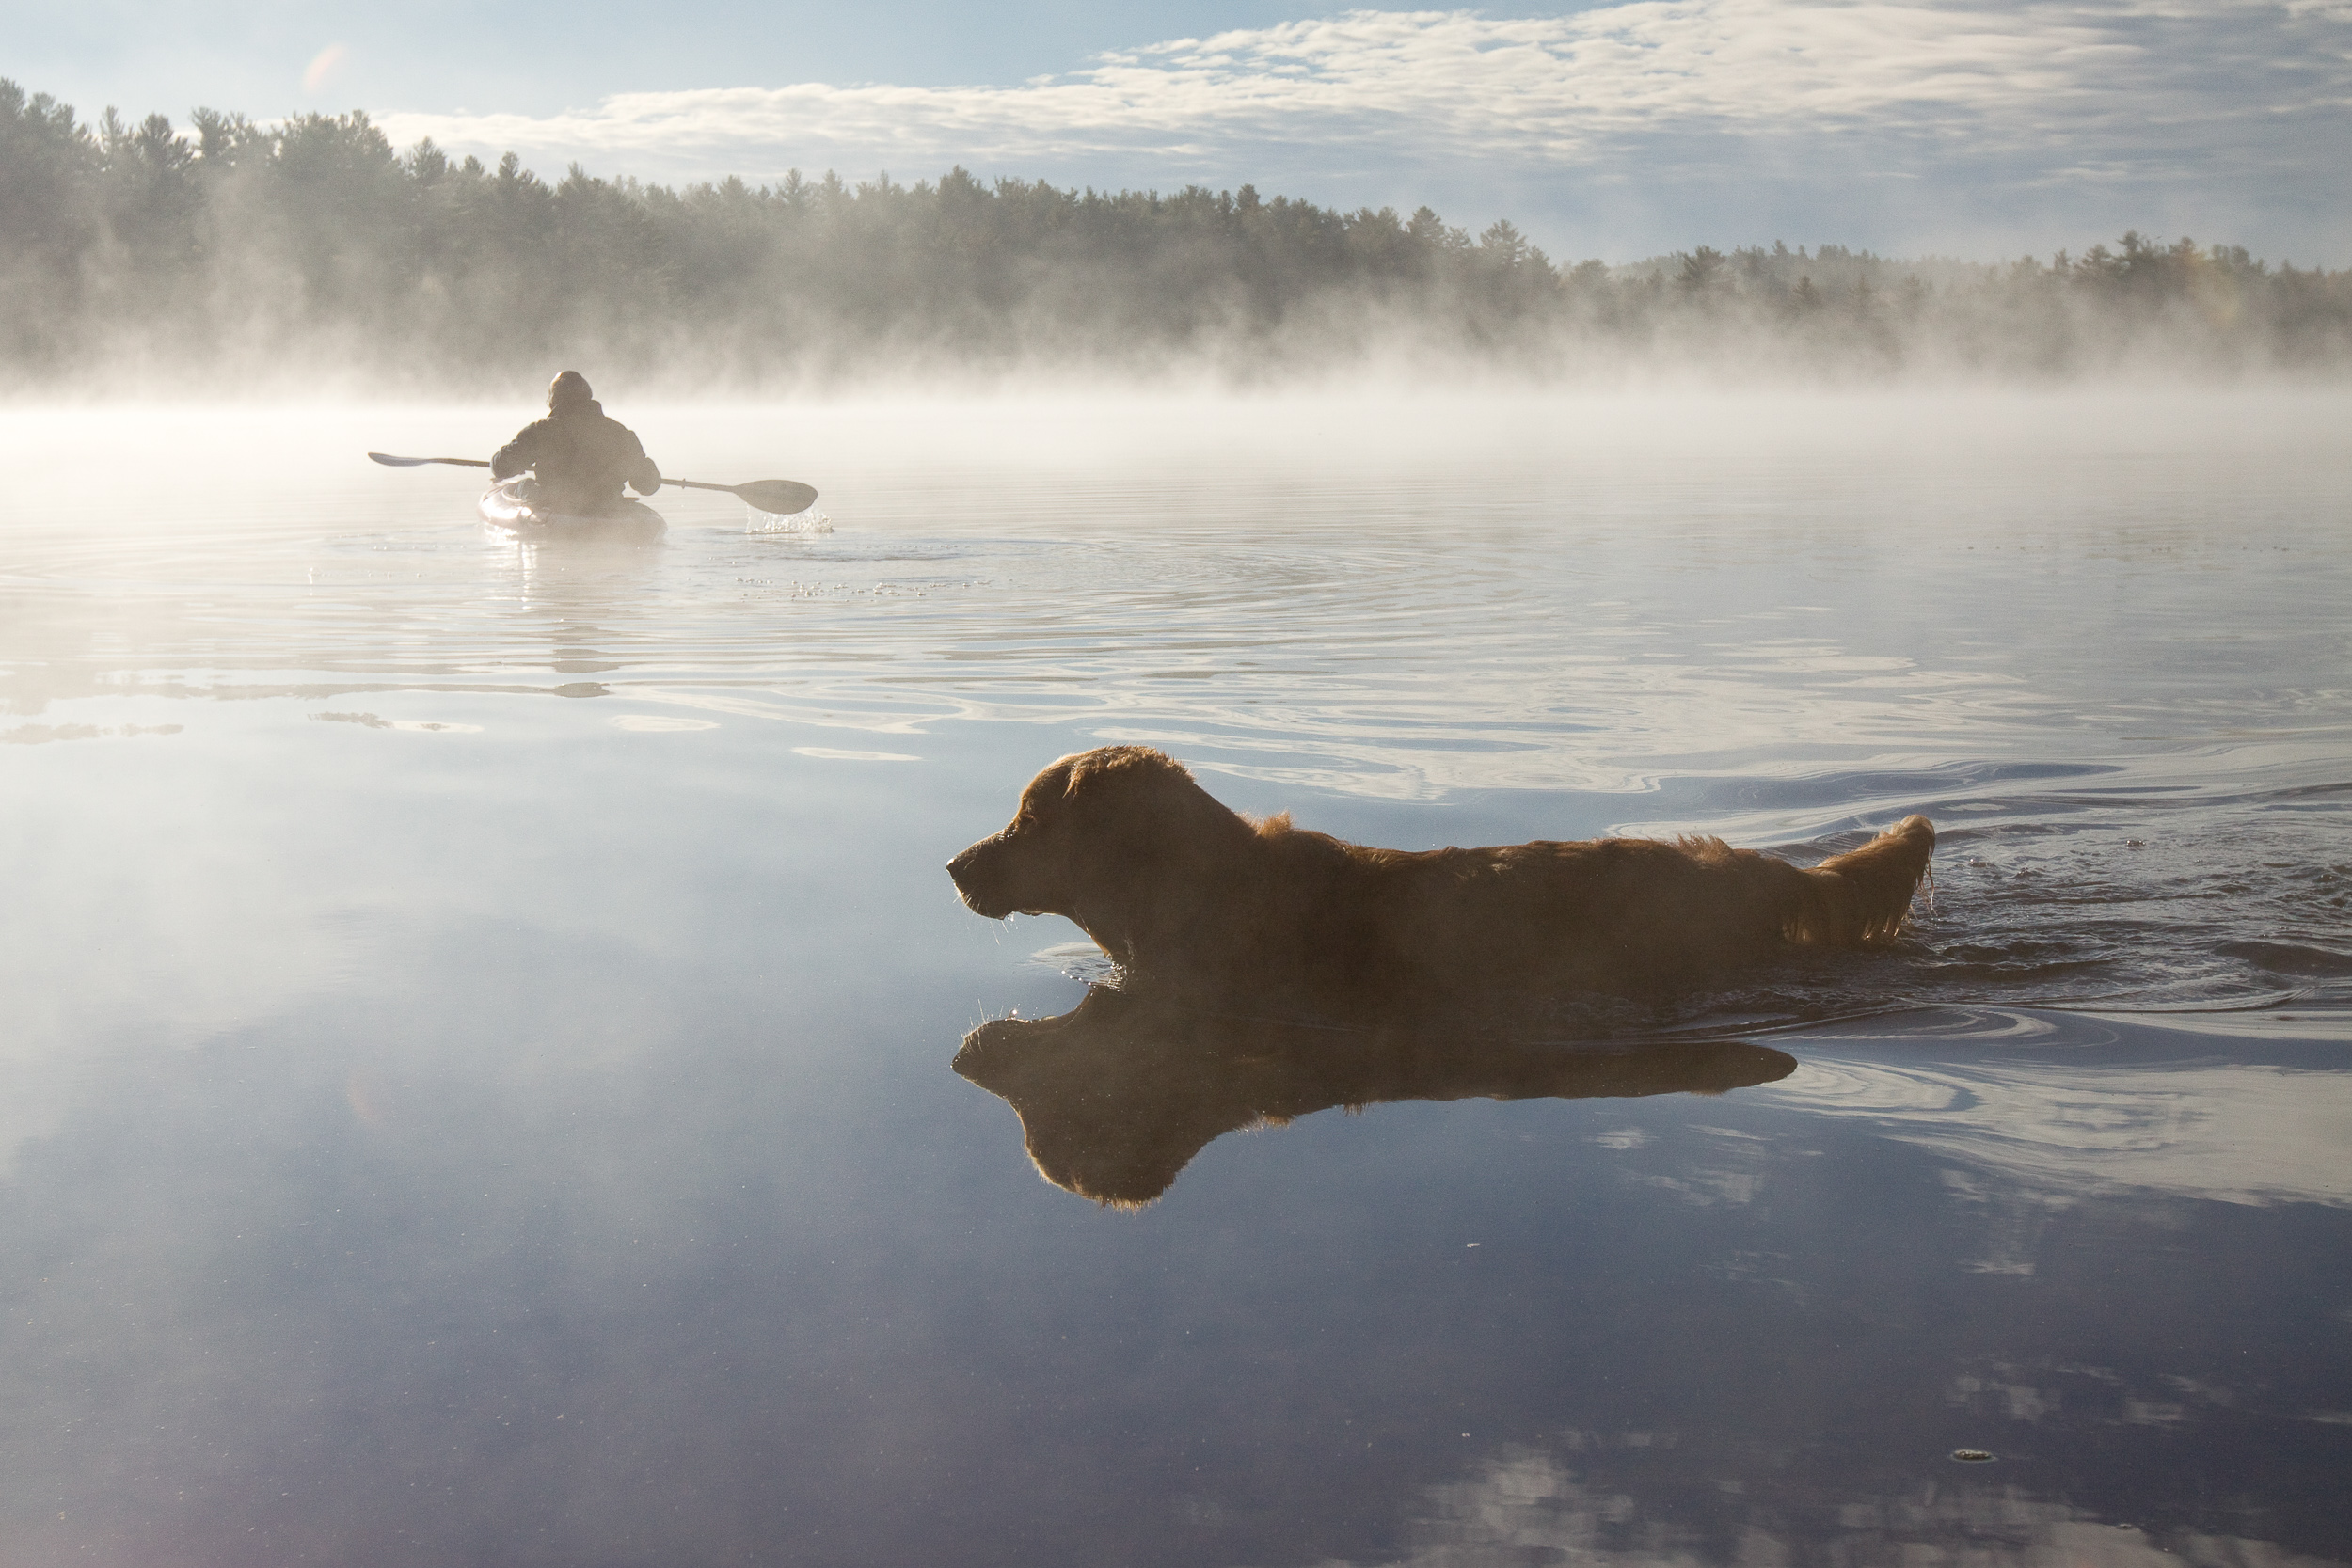 Kayak and Dog